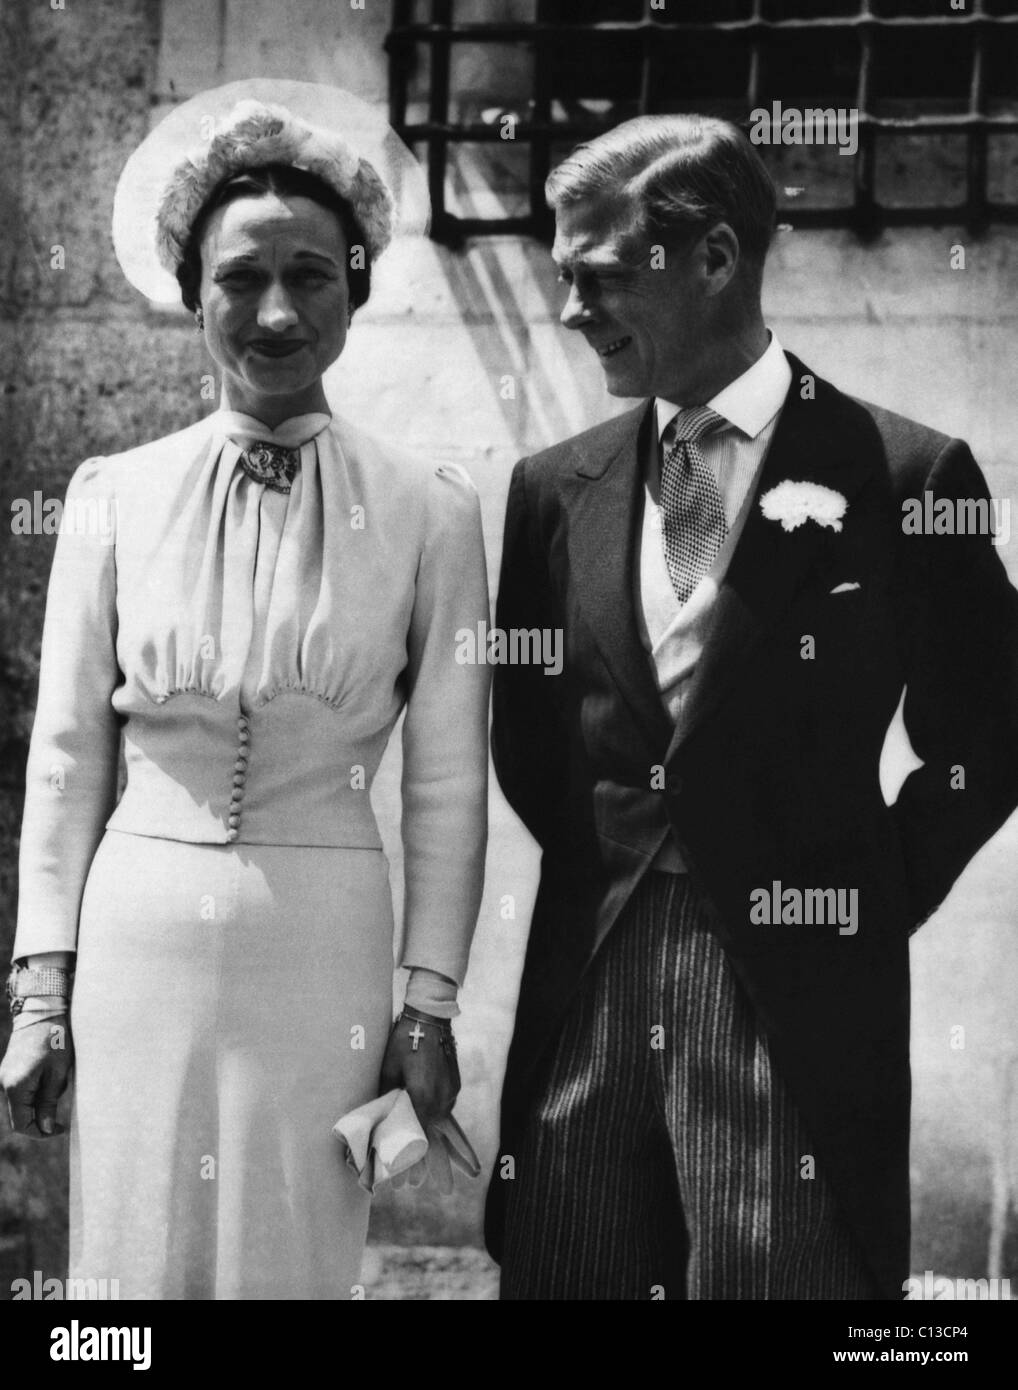 La Duchesse de Windsor, Wallis Simpson et le Prince Edward, duc de Windsor le jour de leur mariage, Chateau de Cande, Monts, France, le 3 juin 1937. Banque D'Images